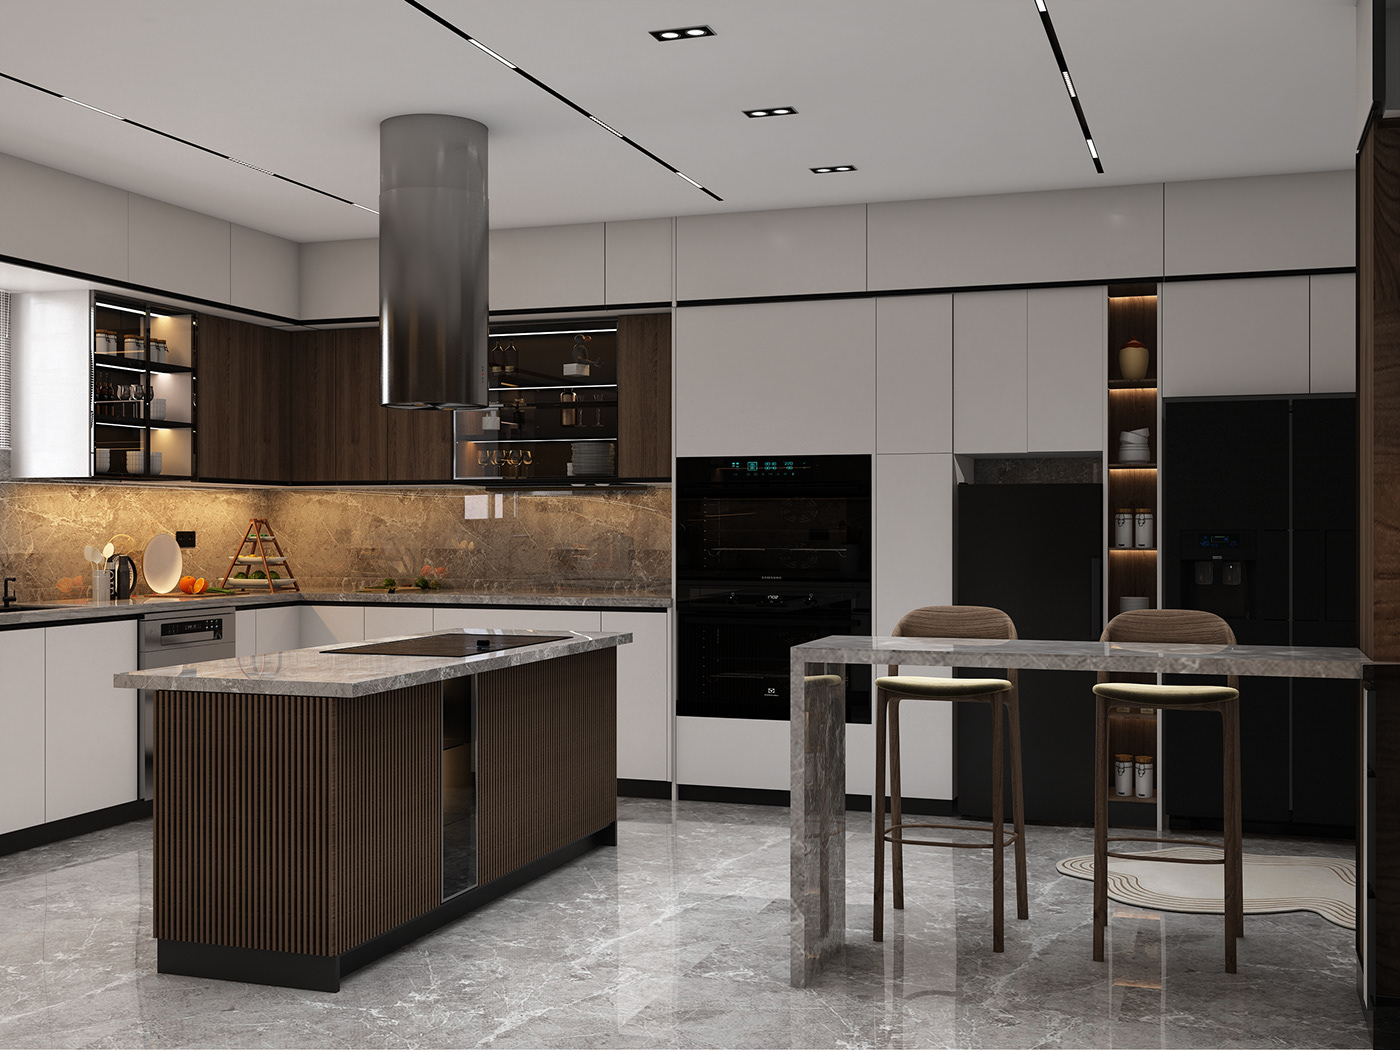 kitchen interior design  visualization modern 3ds max architecture Render vray